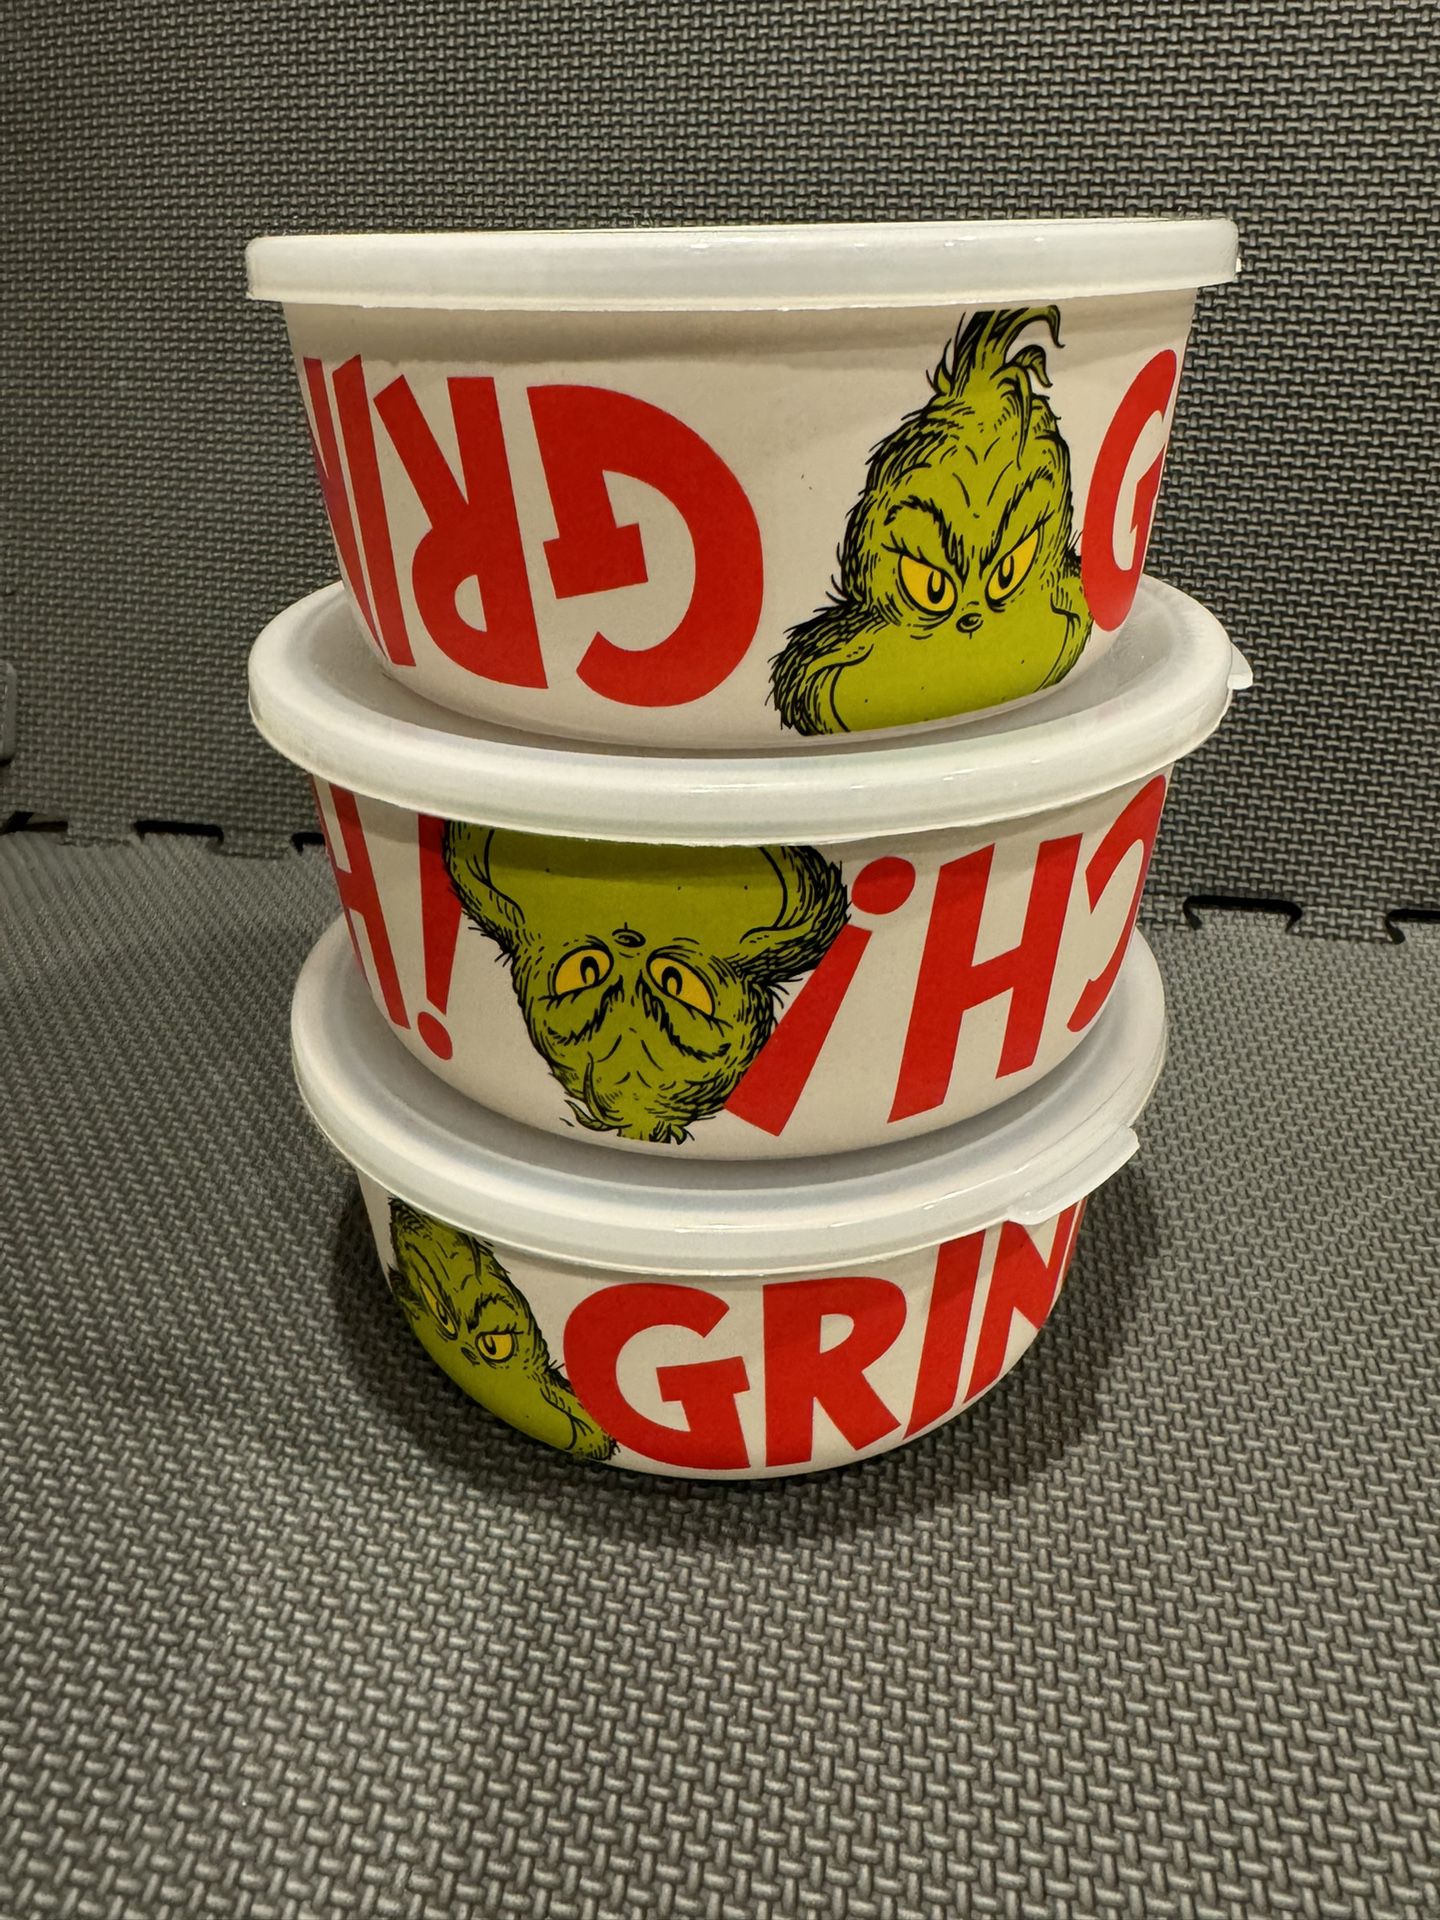 3 Piece Grinch Melamine Storage Set Brand new!